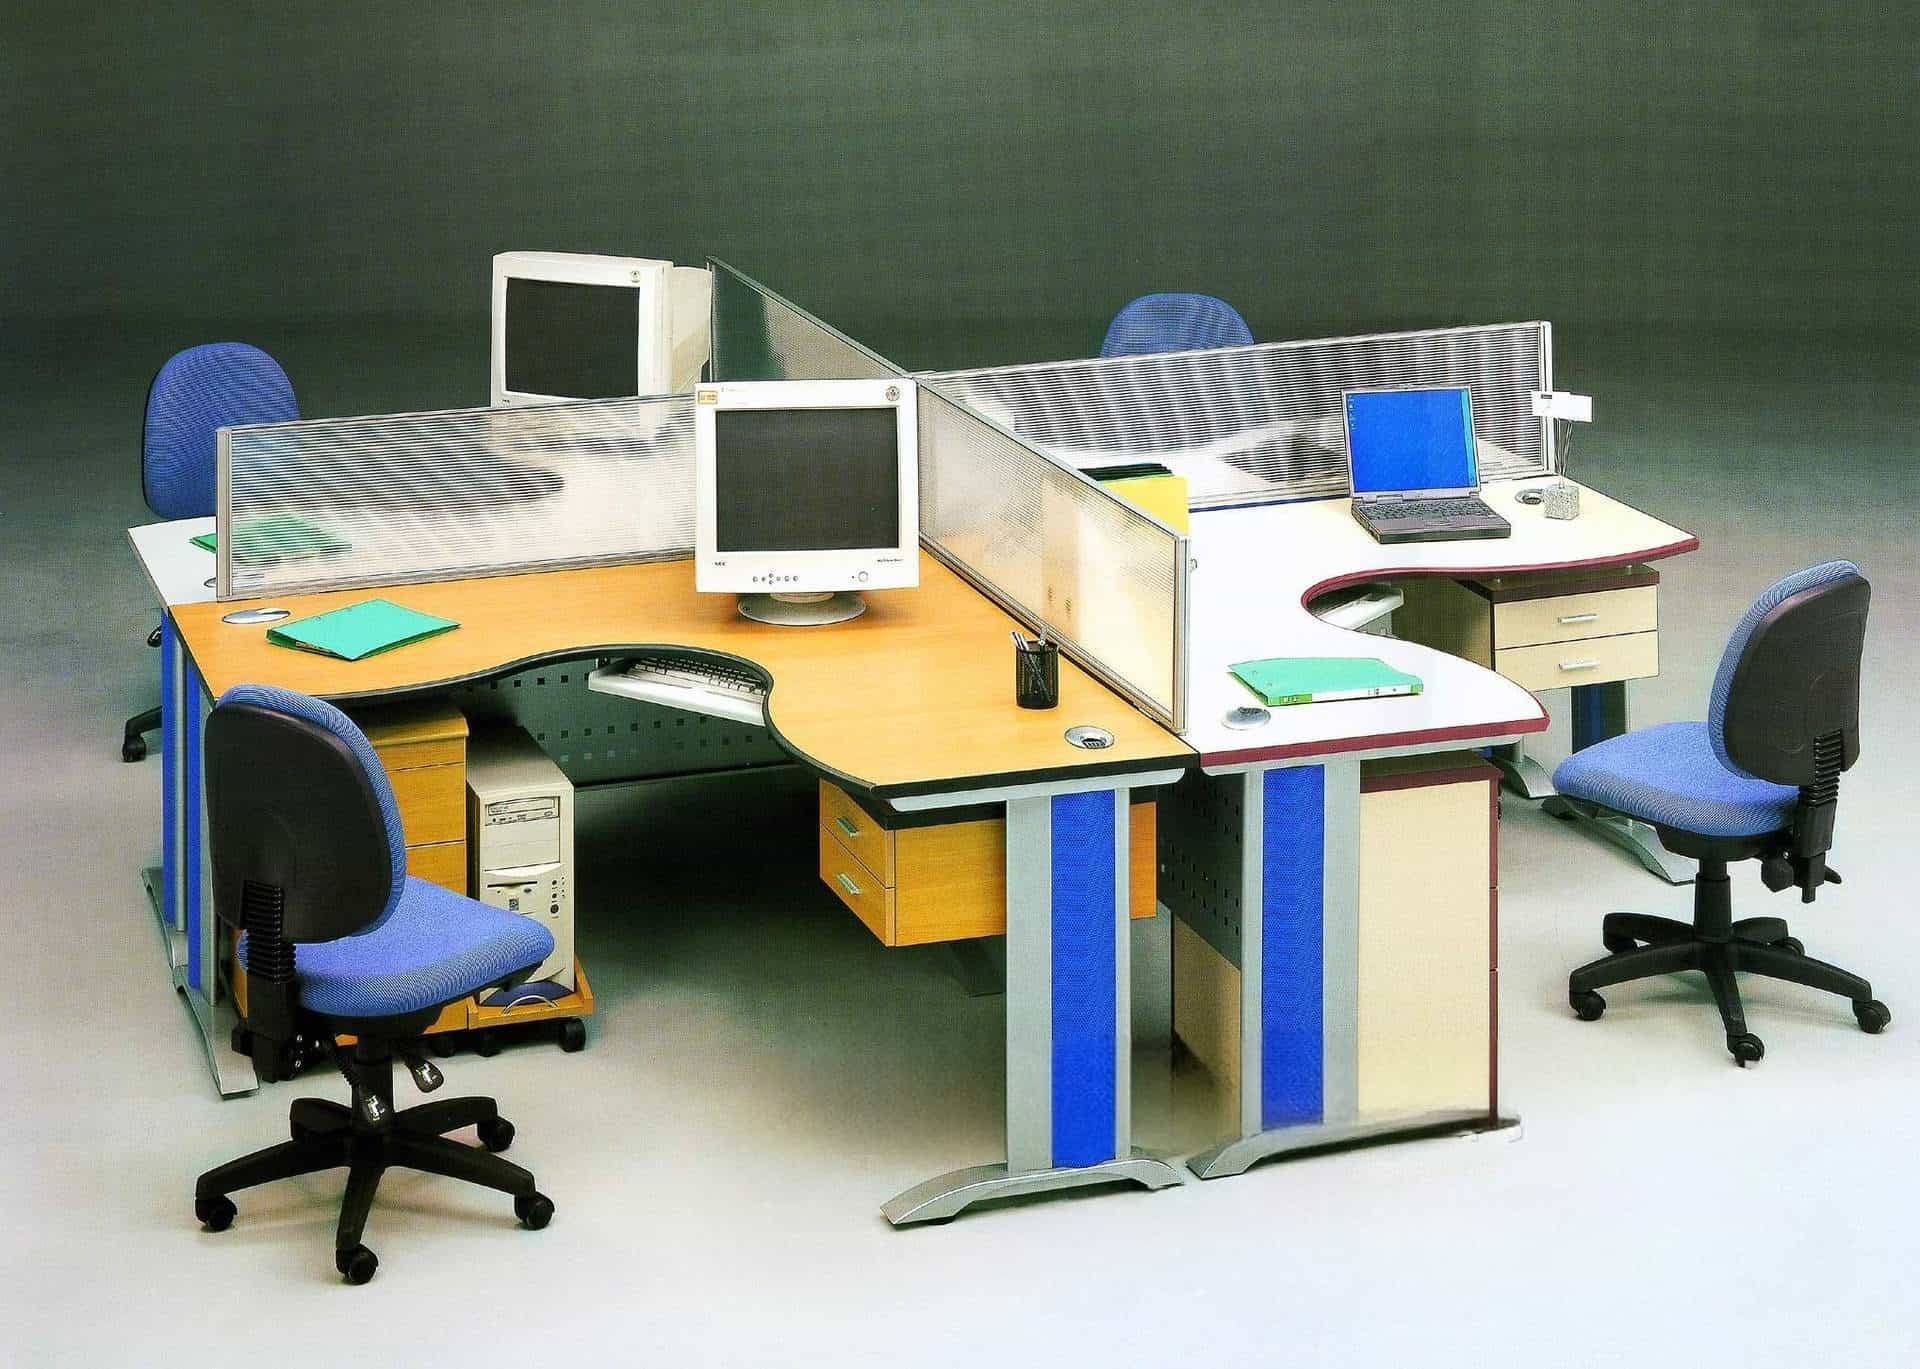 Chân bàn văn phòng bằng thép cao cấp QF01